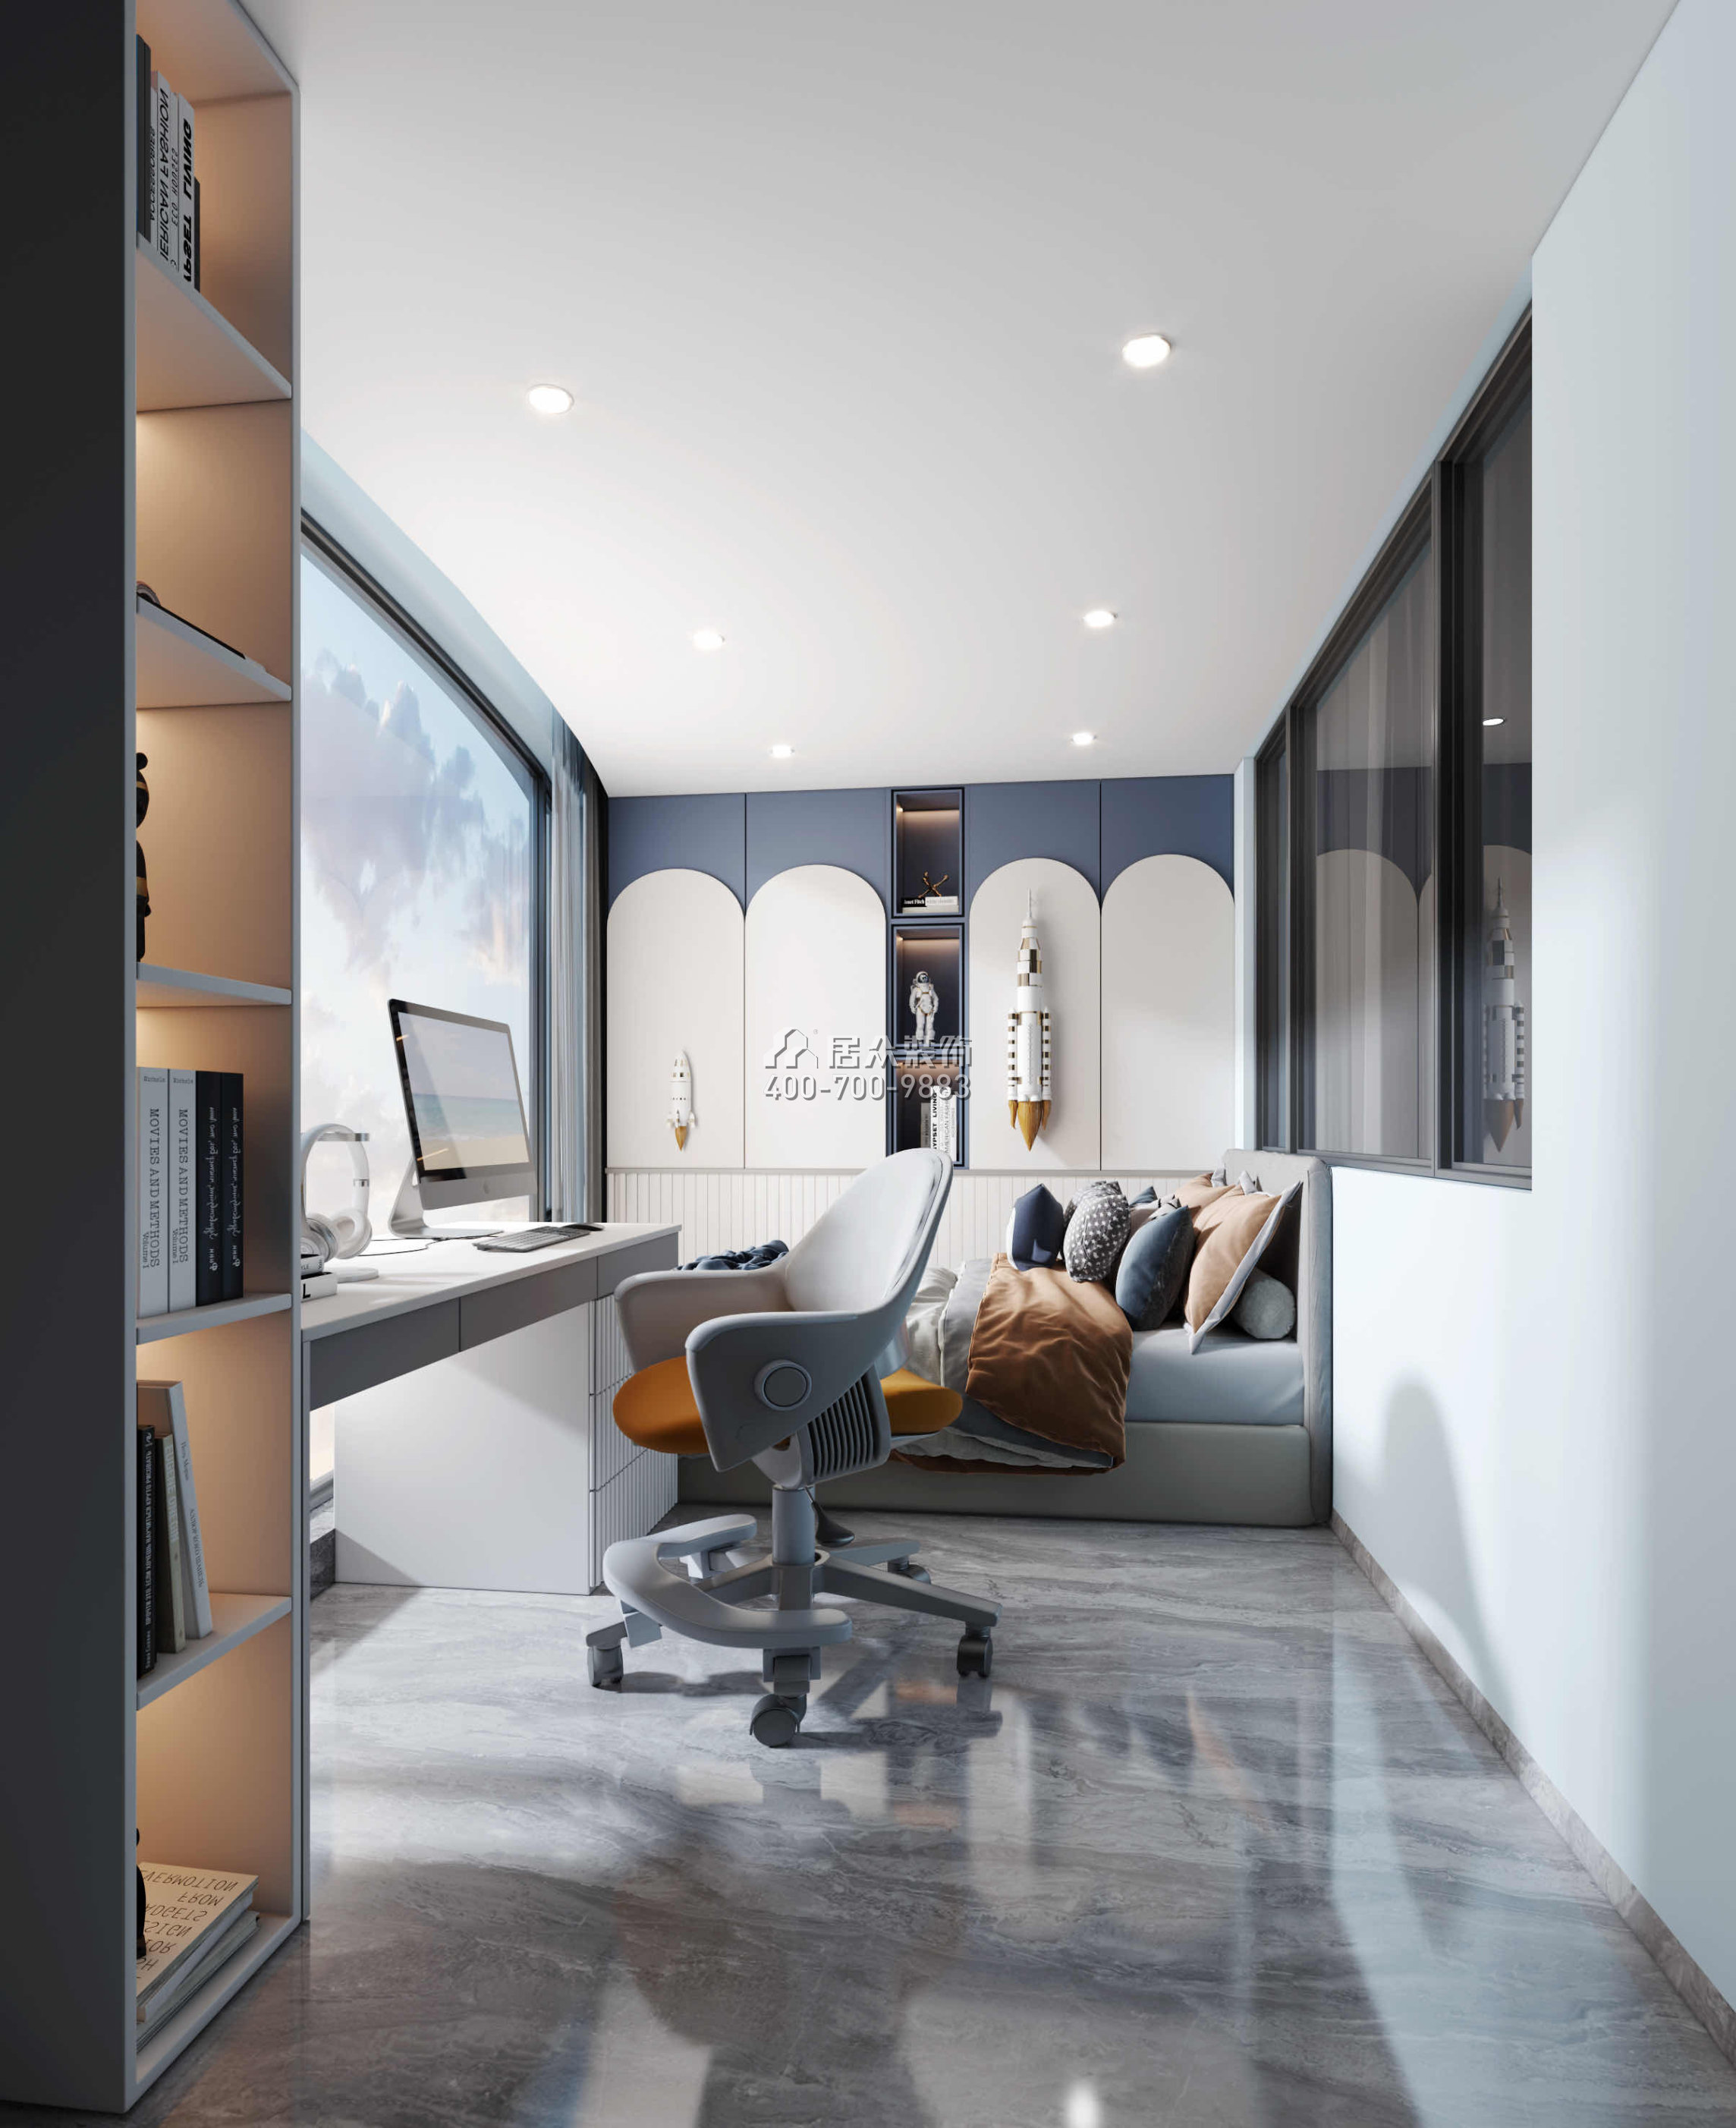 碧海紅樹園120平方米現代簡約風格平層戶型臥室裝修效果圖